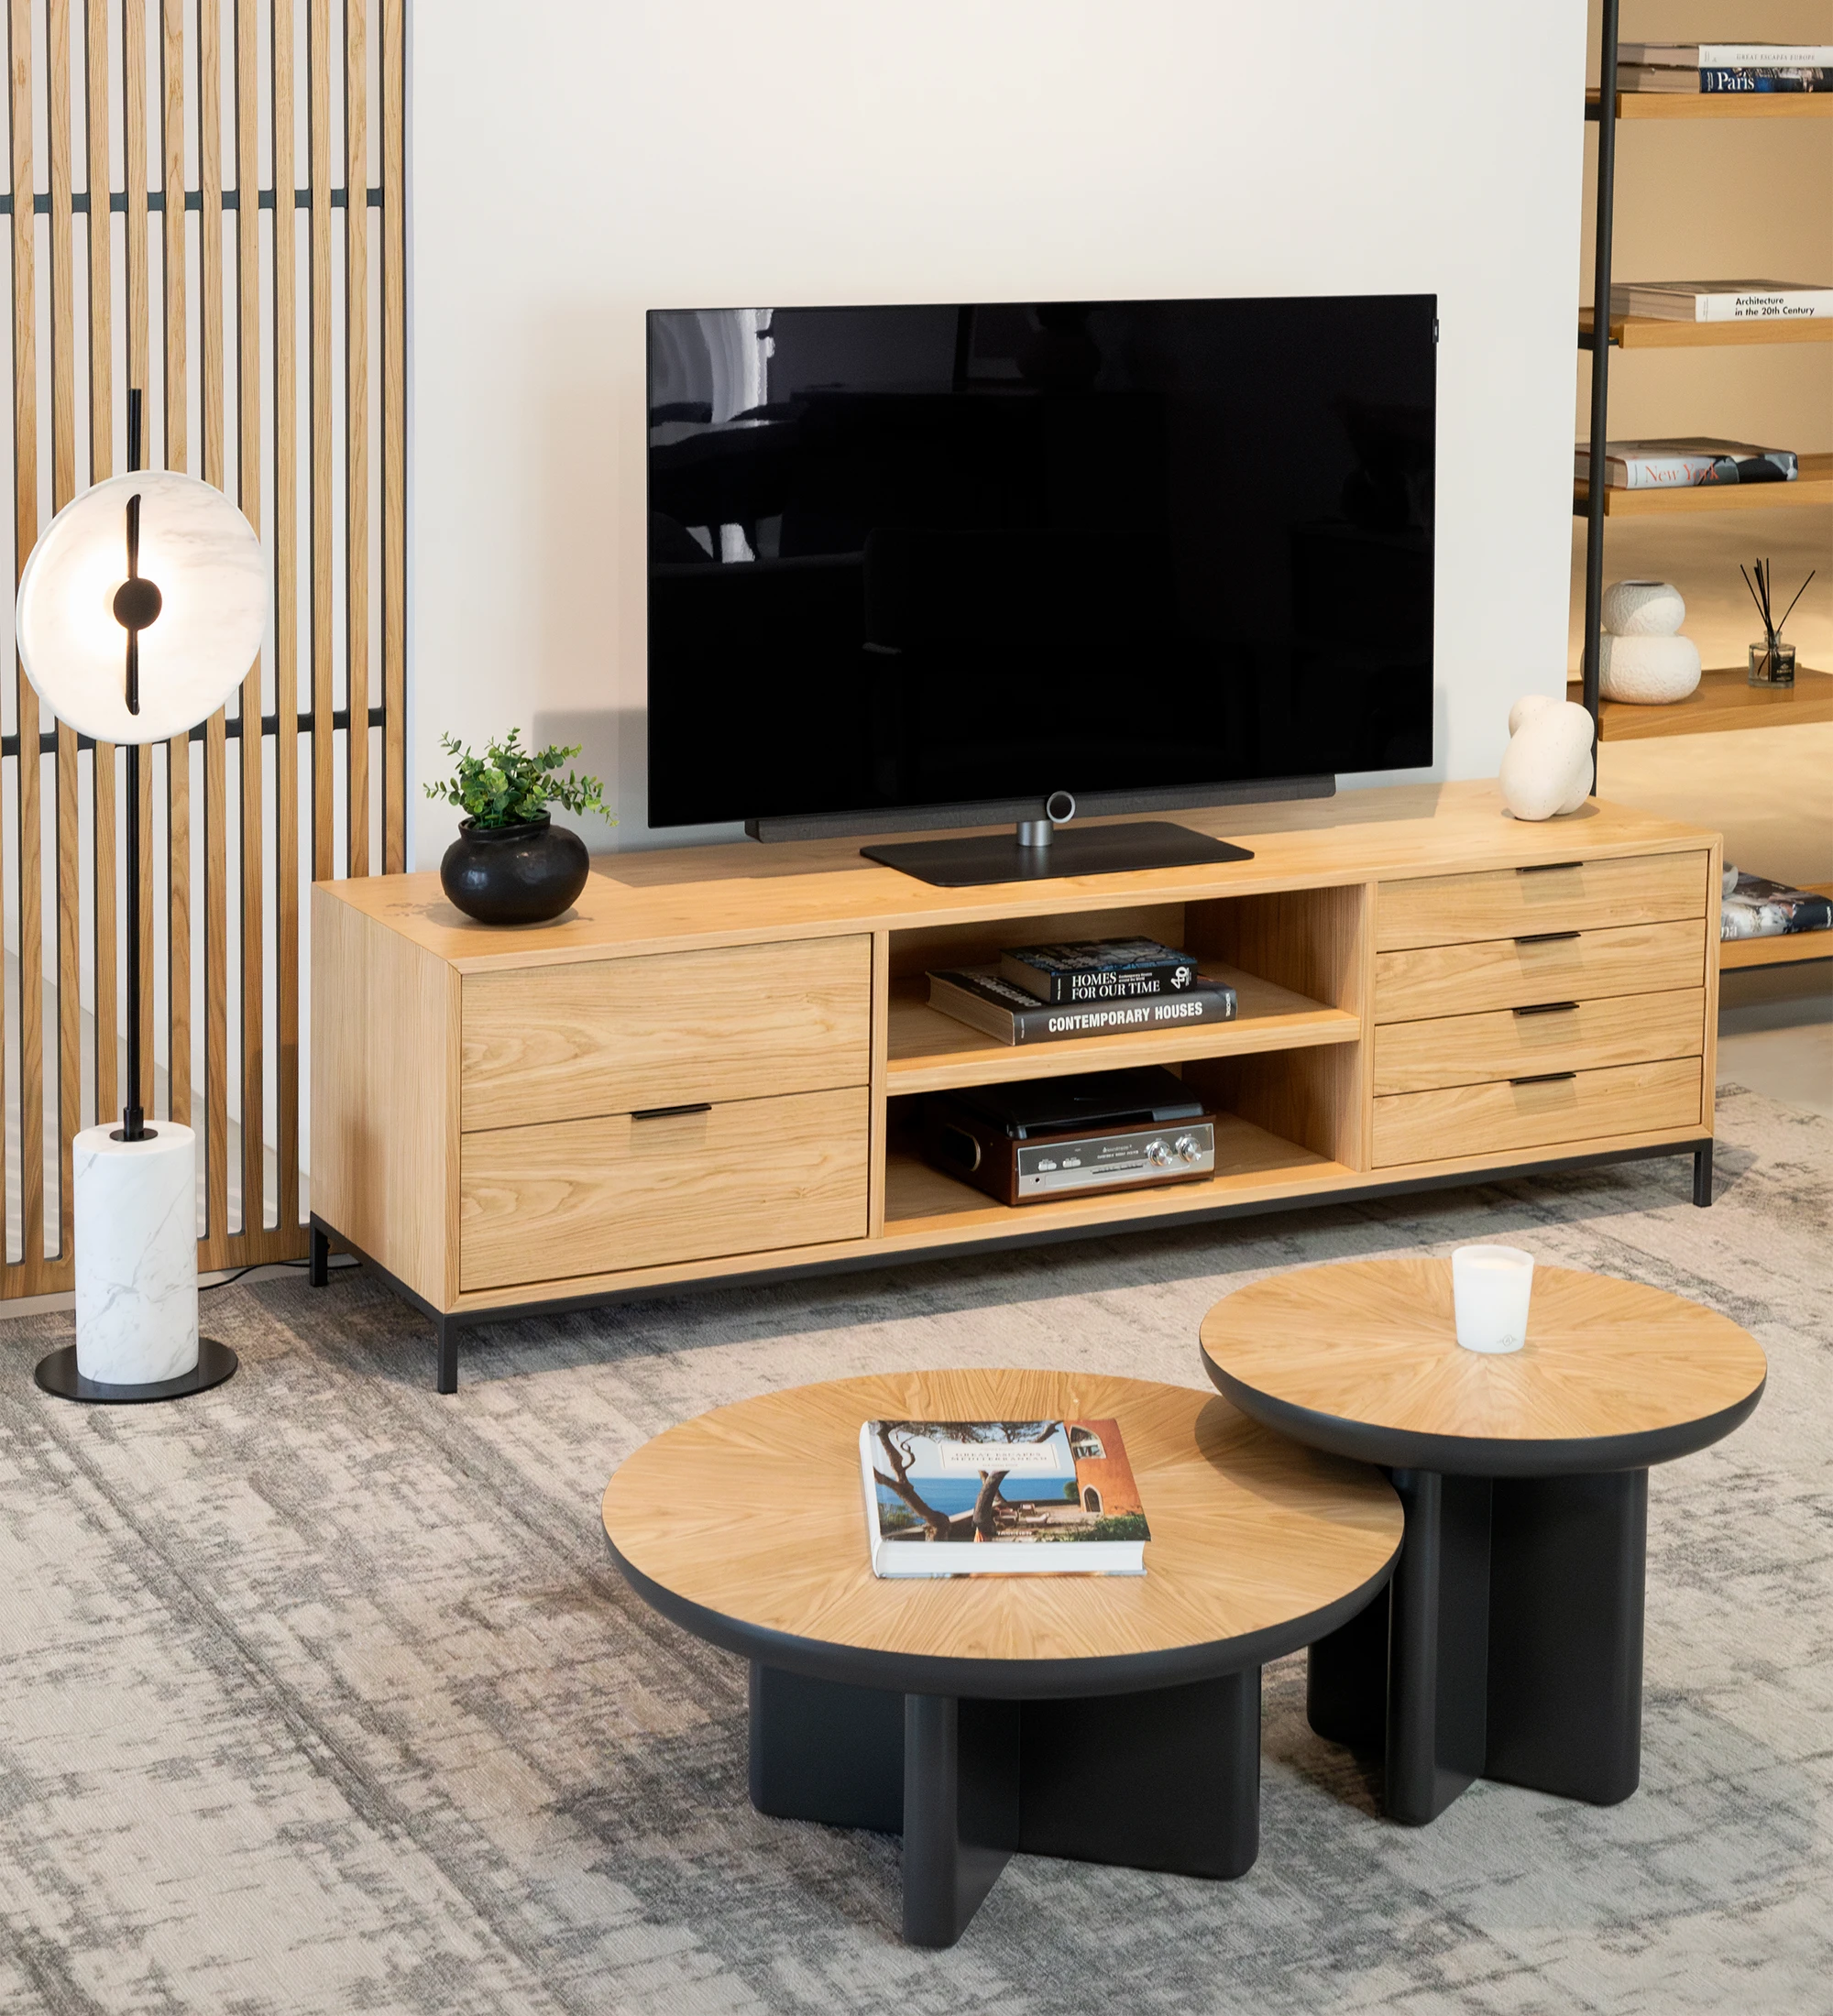 Mueble TV Antarte by IA 1 puerta y 4 cajones en roble natural, pies en metal lacado negro, 195 x 56 cm.